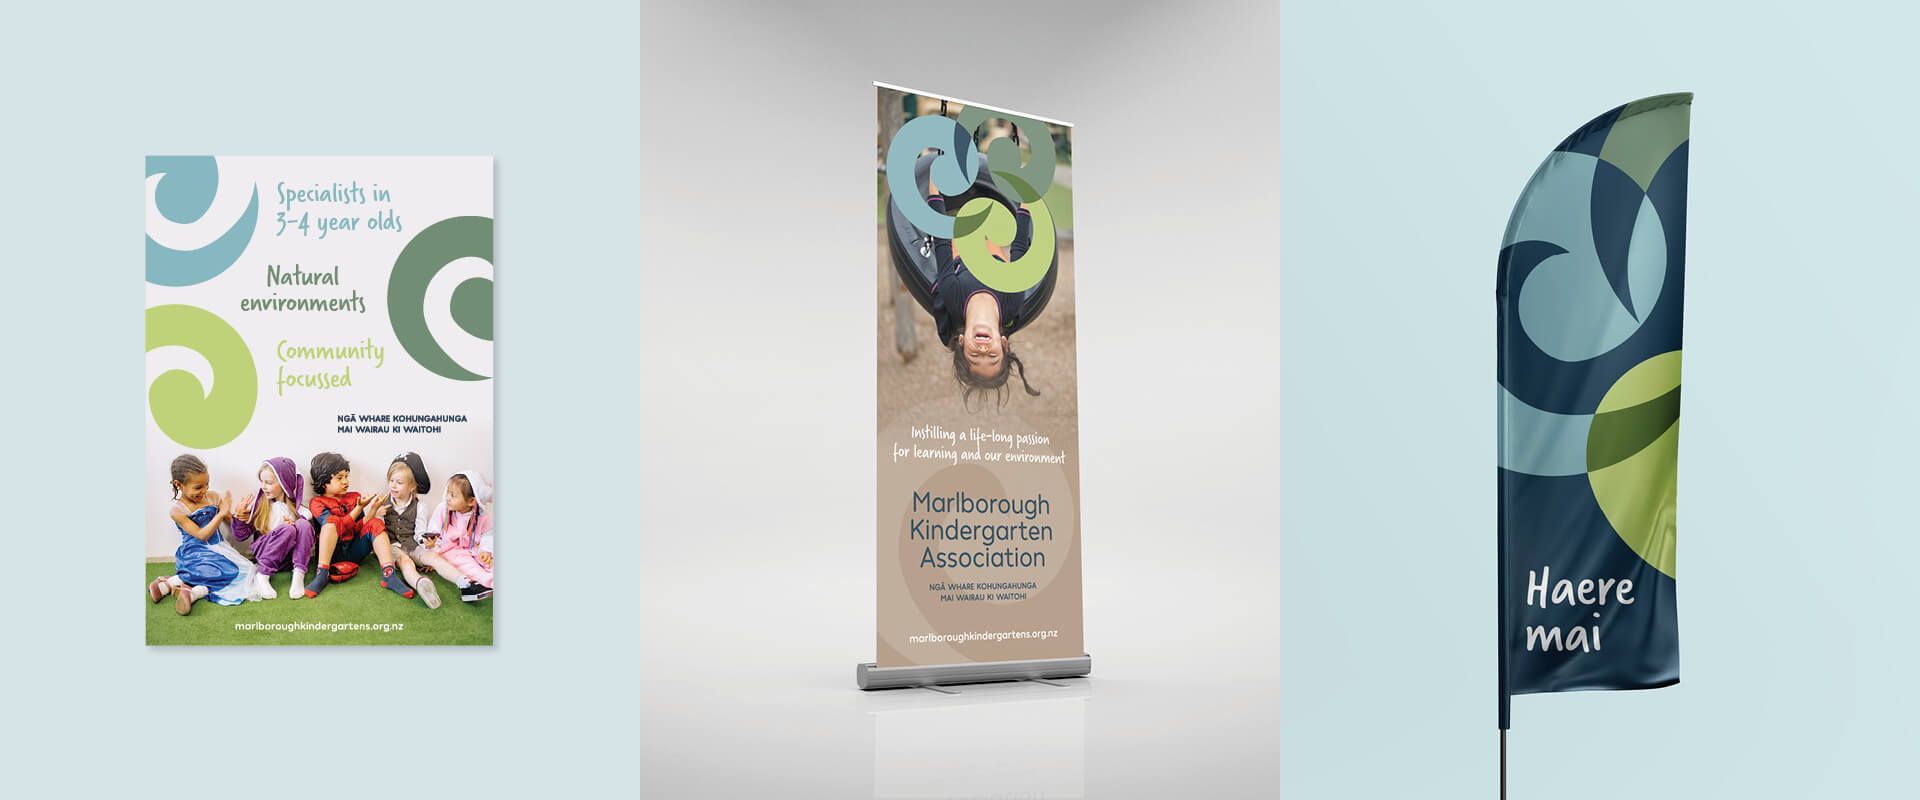 Marlborough Kindergarten Association branding by Vanilla Hayes Ltd in Blenheim, New Zealand